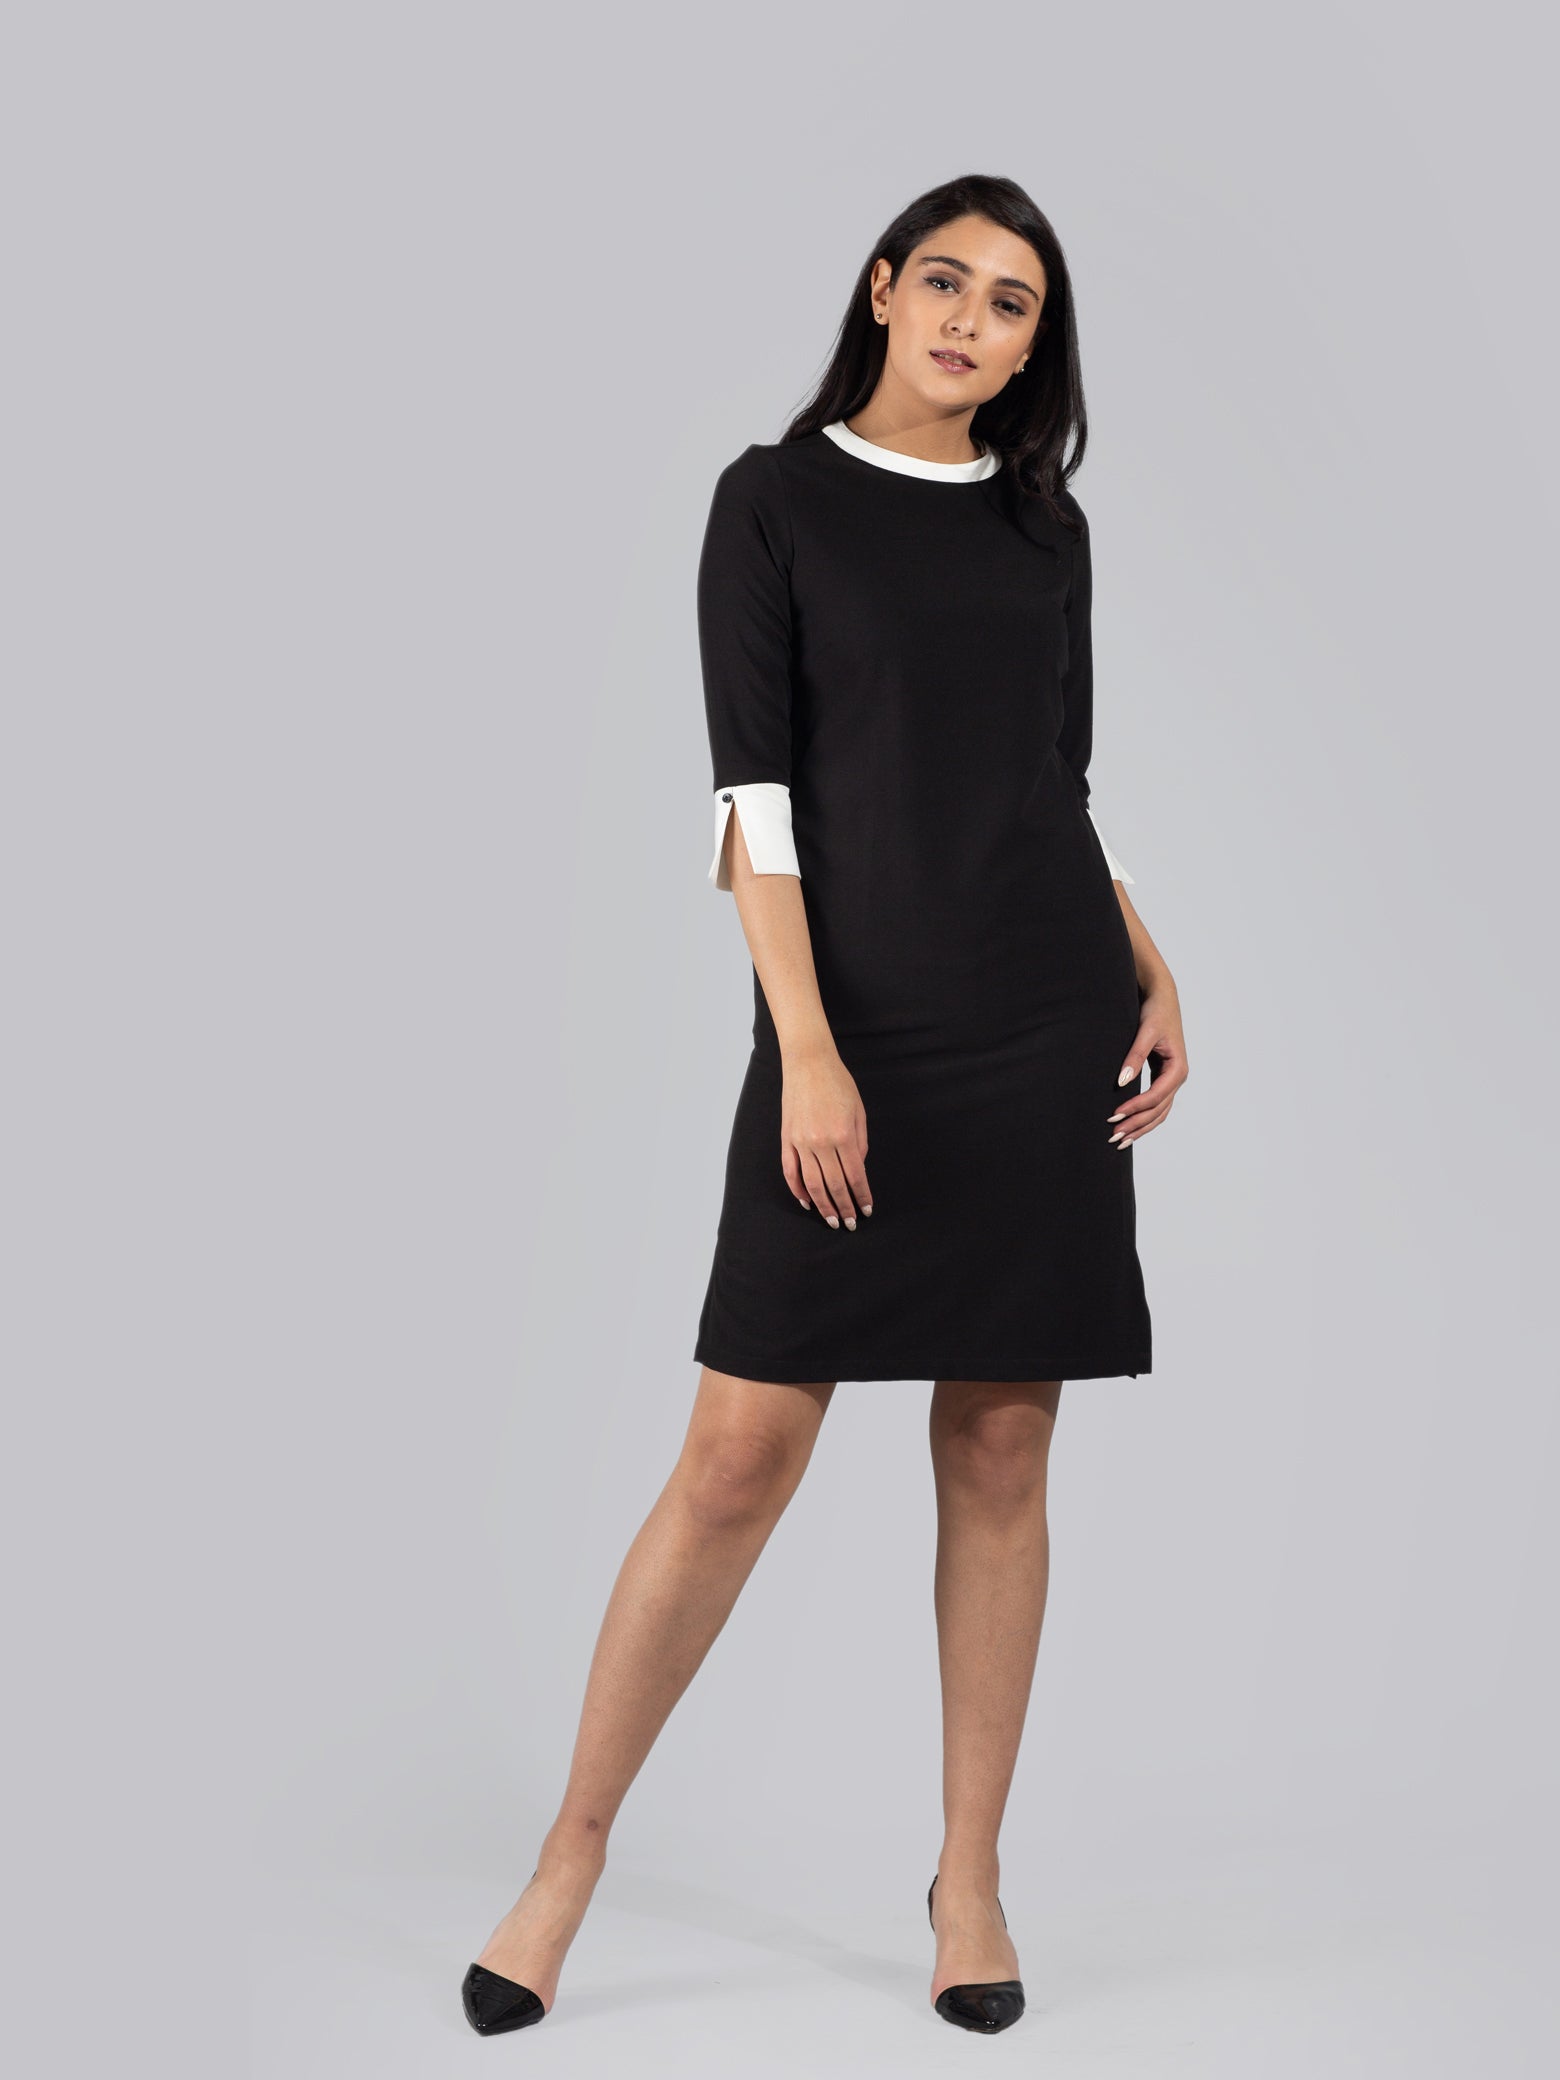 Quarter Sleeve Colour Block Above Knee Dress - Black & White| Formal Dresses